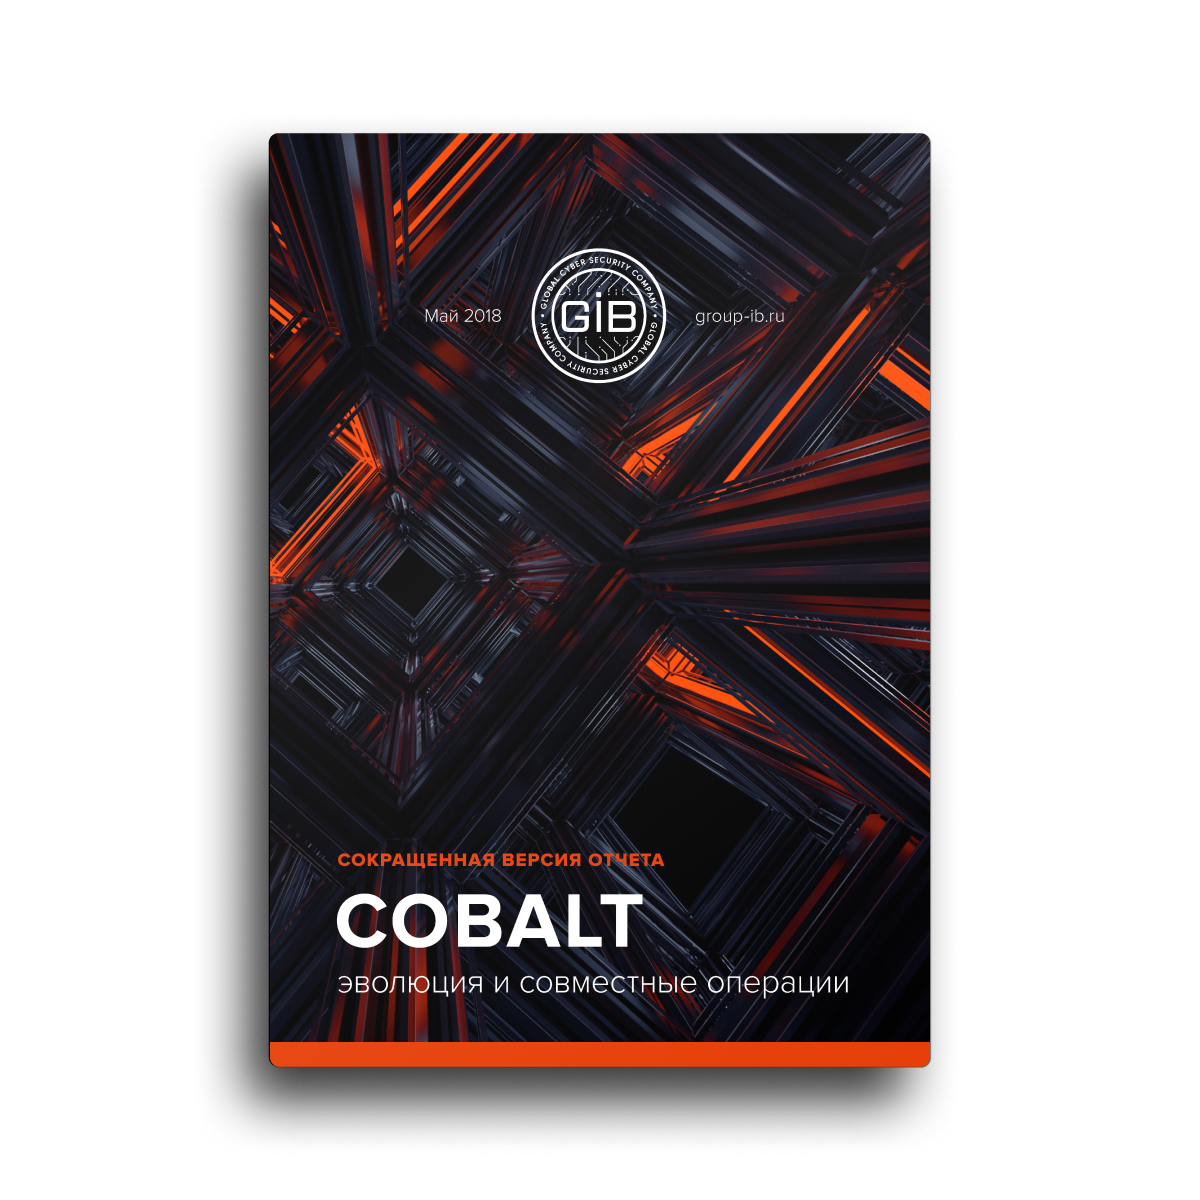 Cobalt: эволюция и совместные операции